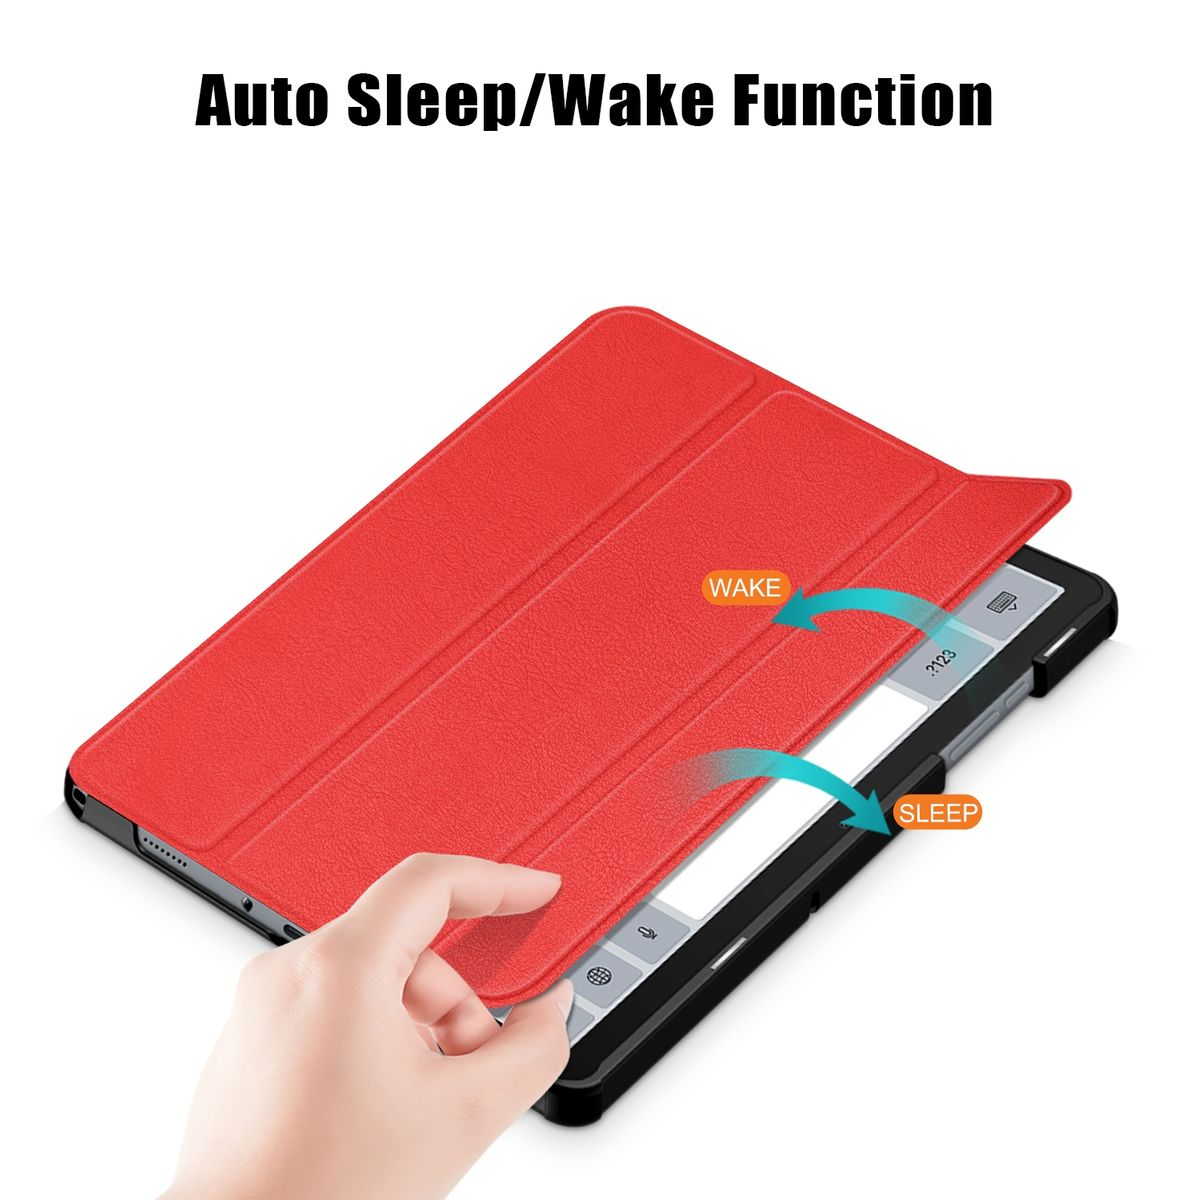 WIGENTO 3folt Wake Full Samsung Cover Silikon UP aufstellbar Tablethülle Kunstleder, Kunststoff Rot für Sleep / & Cover 